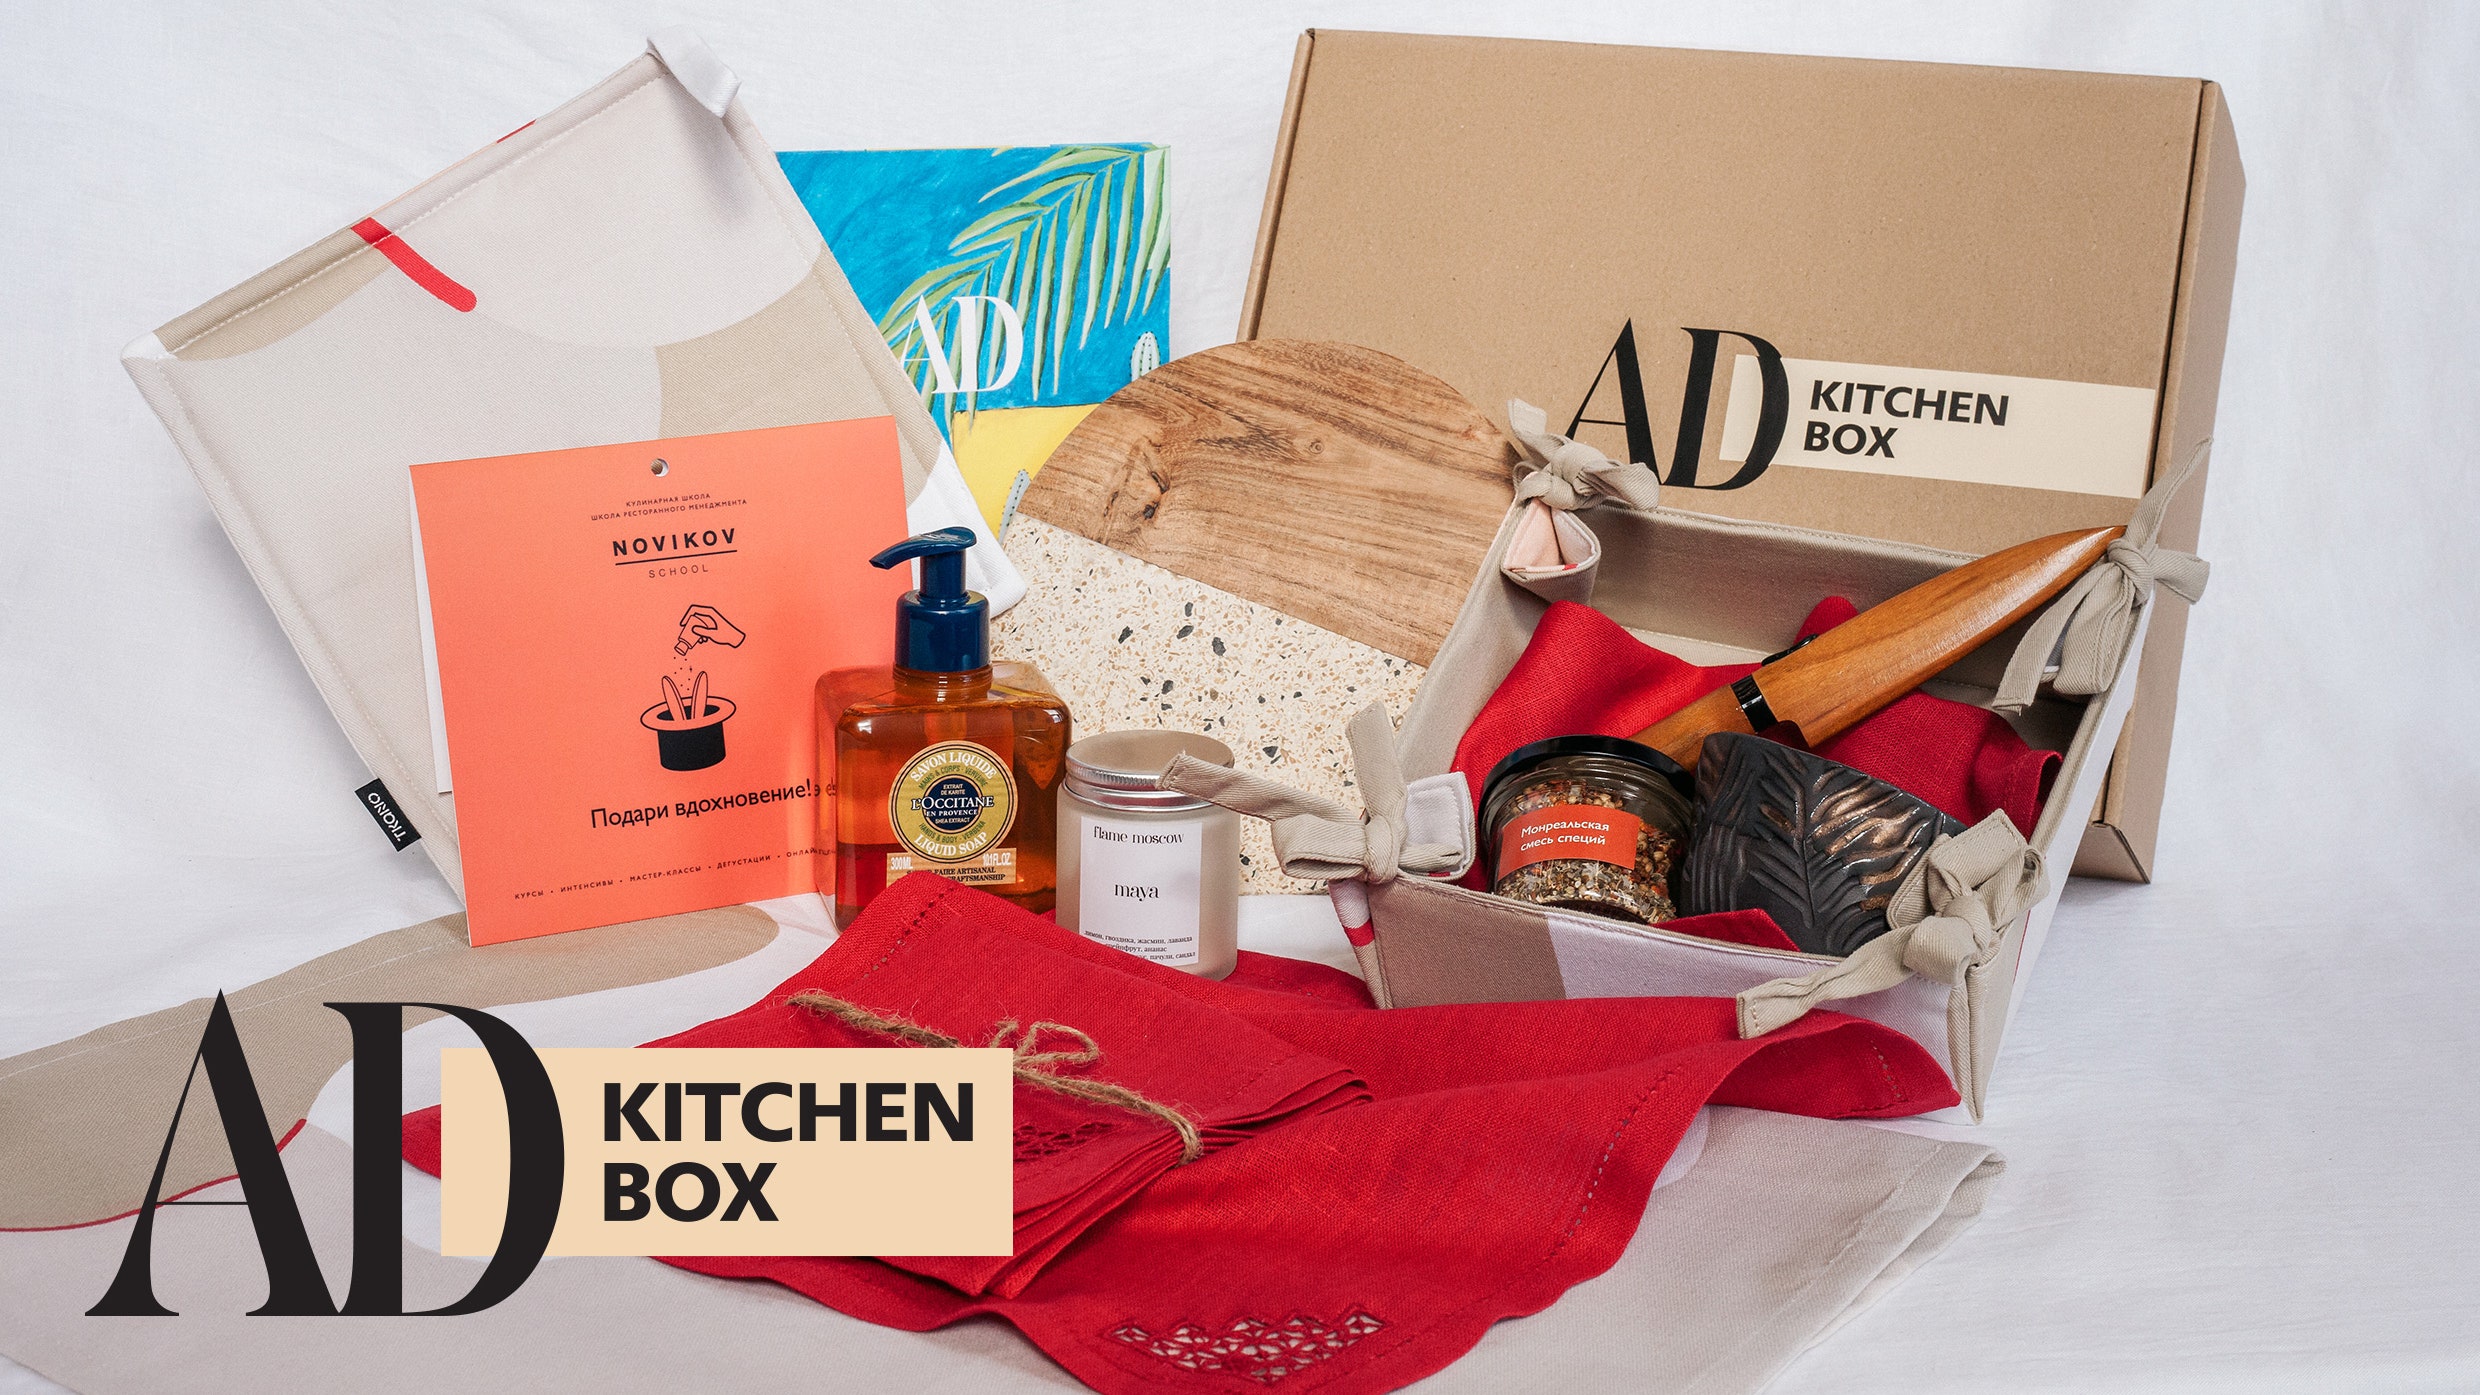 Первый AD Kitchen Box уже в продаже 13 классных аксессуаров для вашей кухни